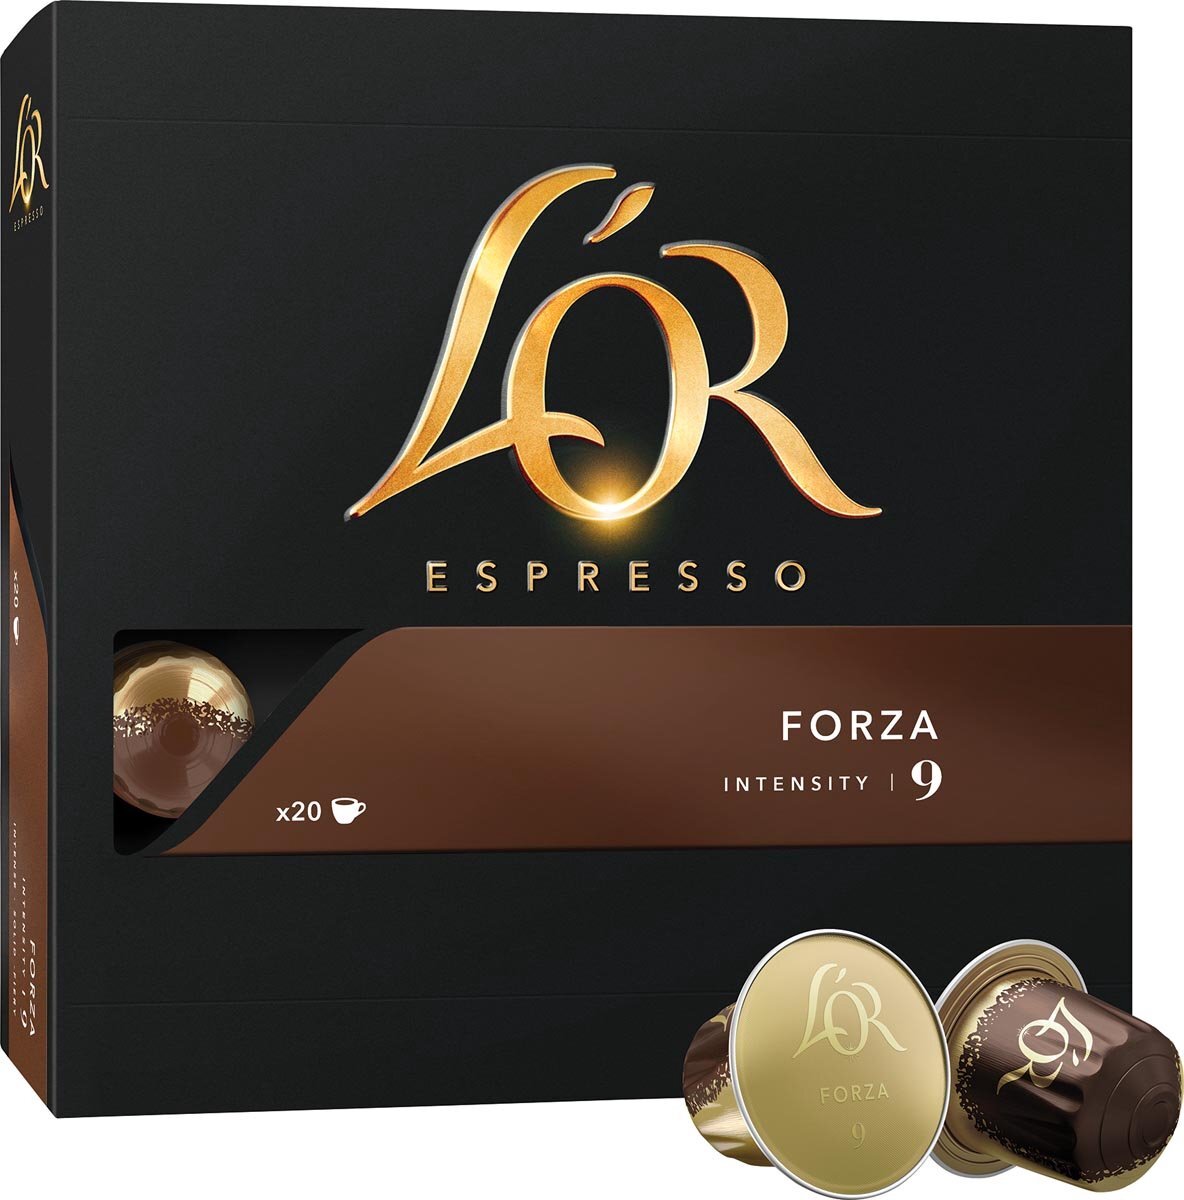 L’OR Capsule - Espresso Forza - 10